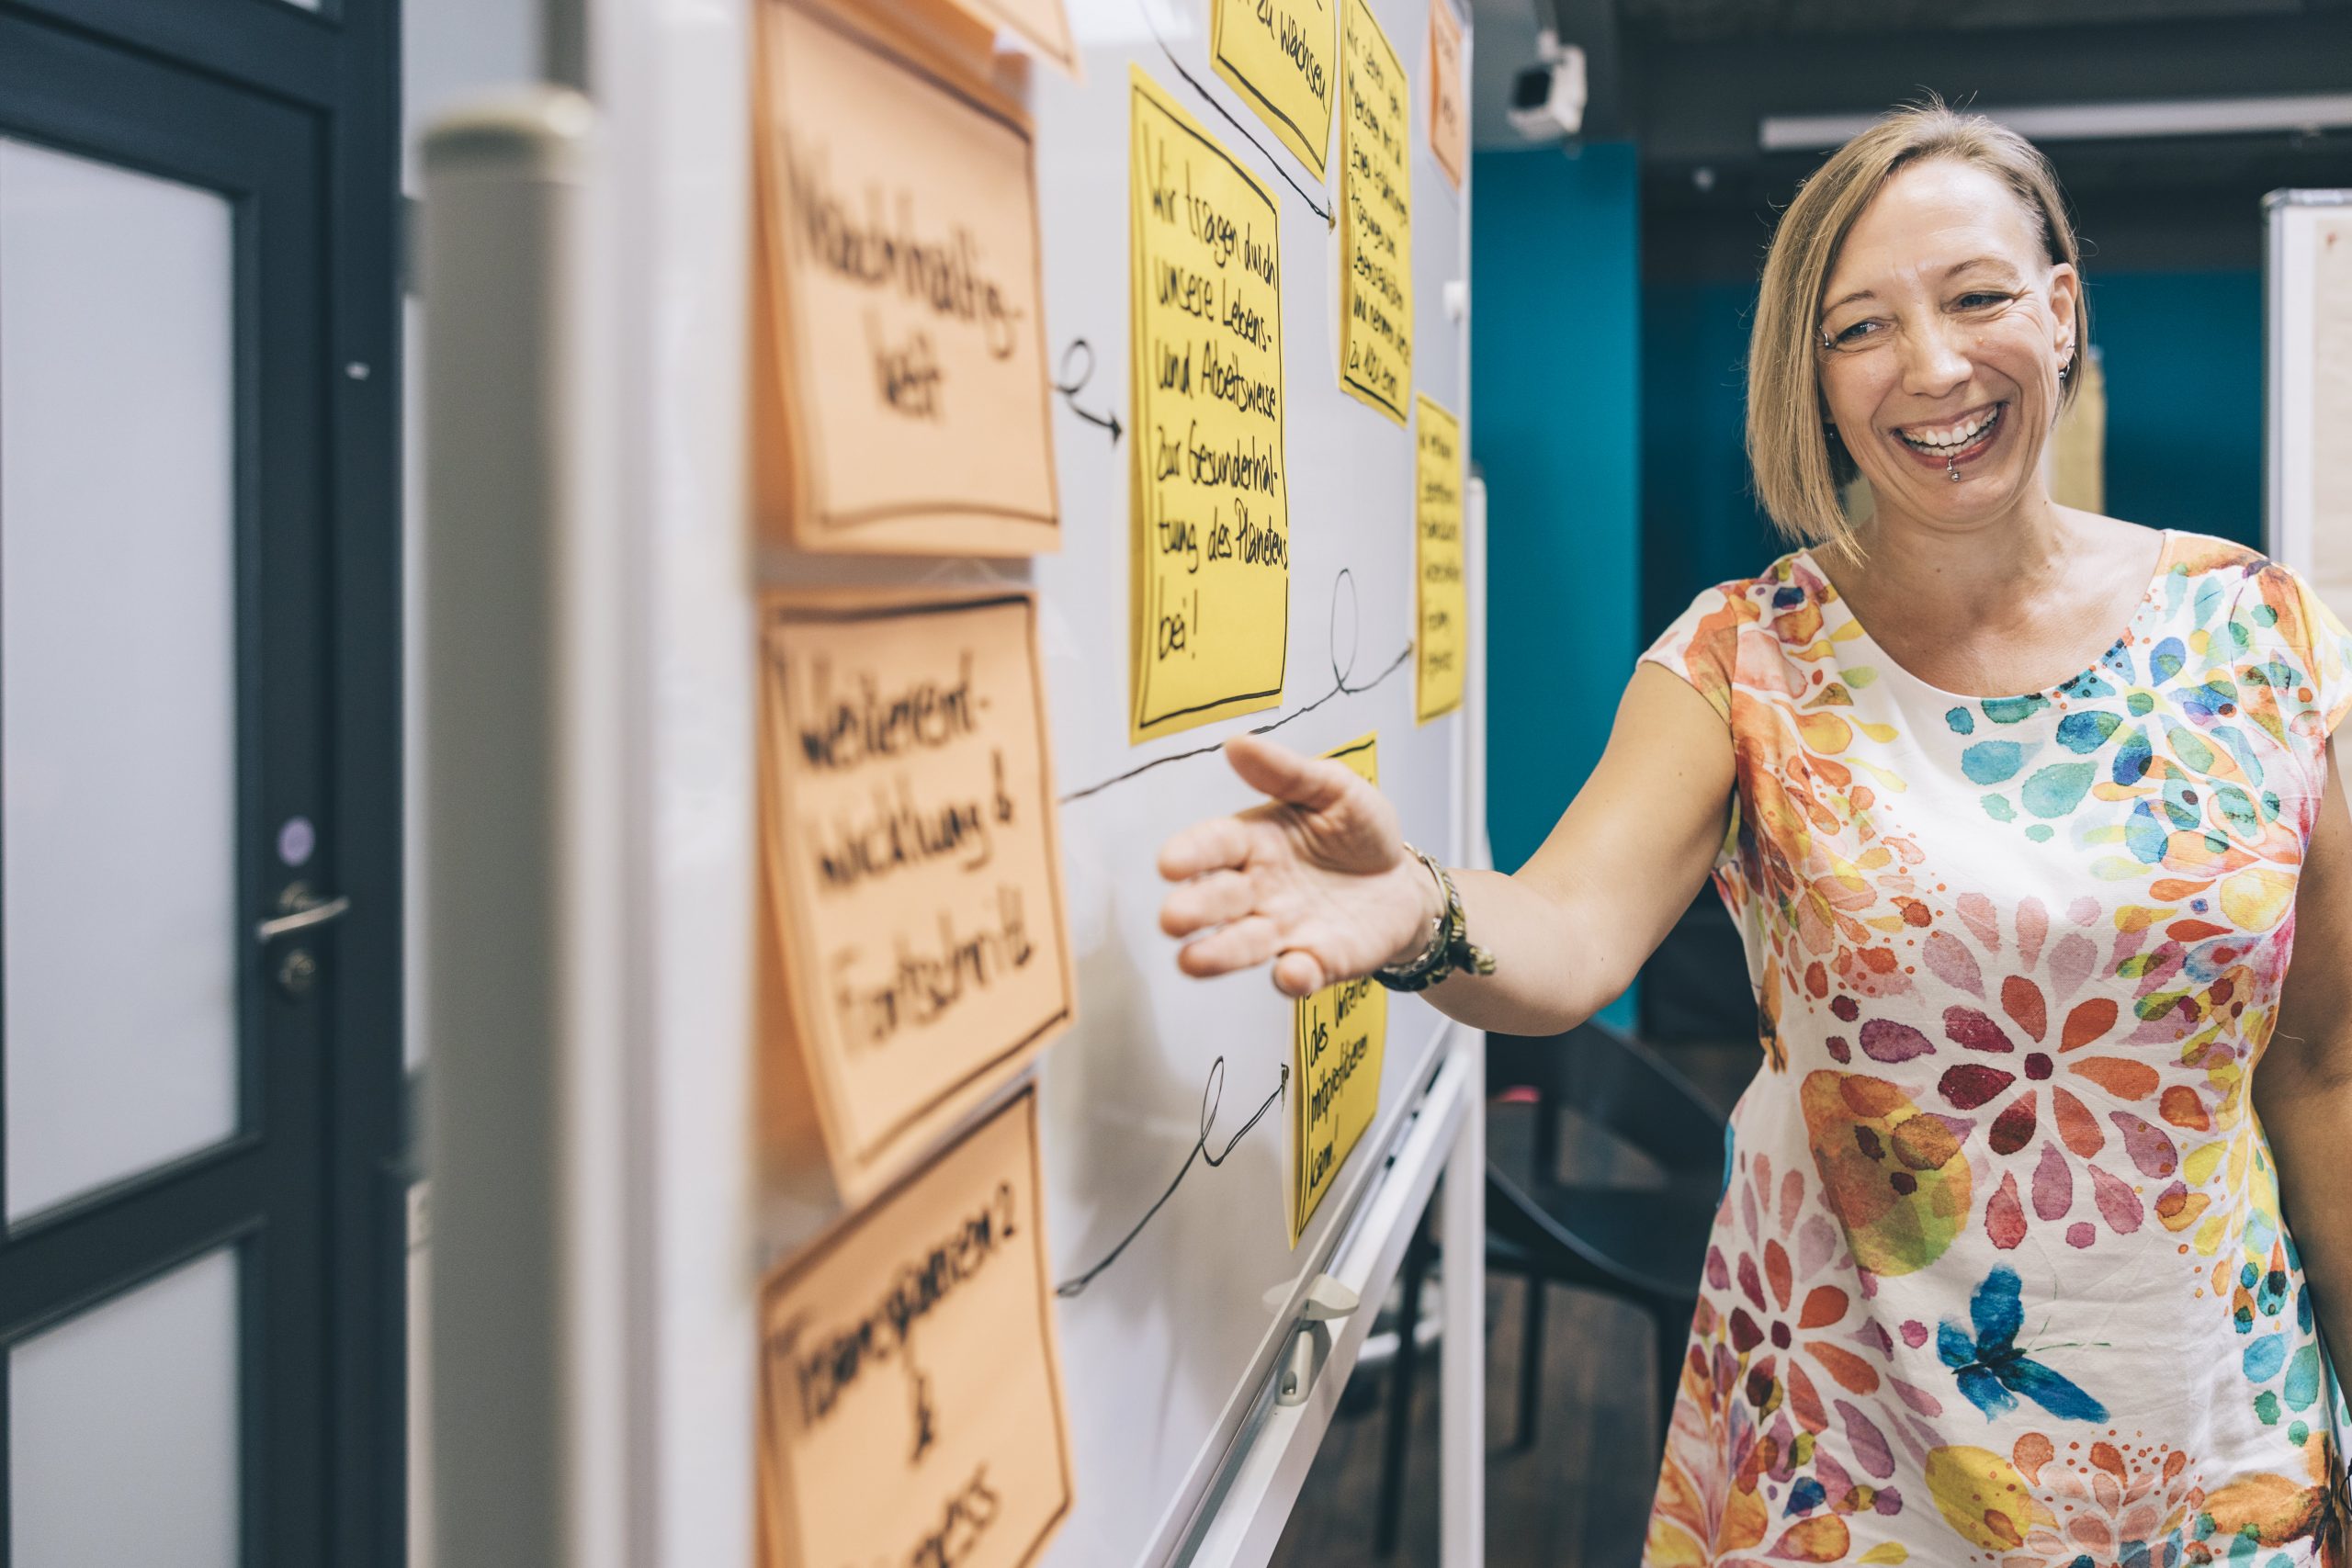 Auf dem Foto ist Heike Maerki aus dem Team von Com-Across in einer Workshopsituation abgebildet. Sie zeigt lachend auf einen Post-It auf einer Moderationswand.